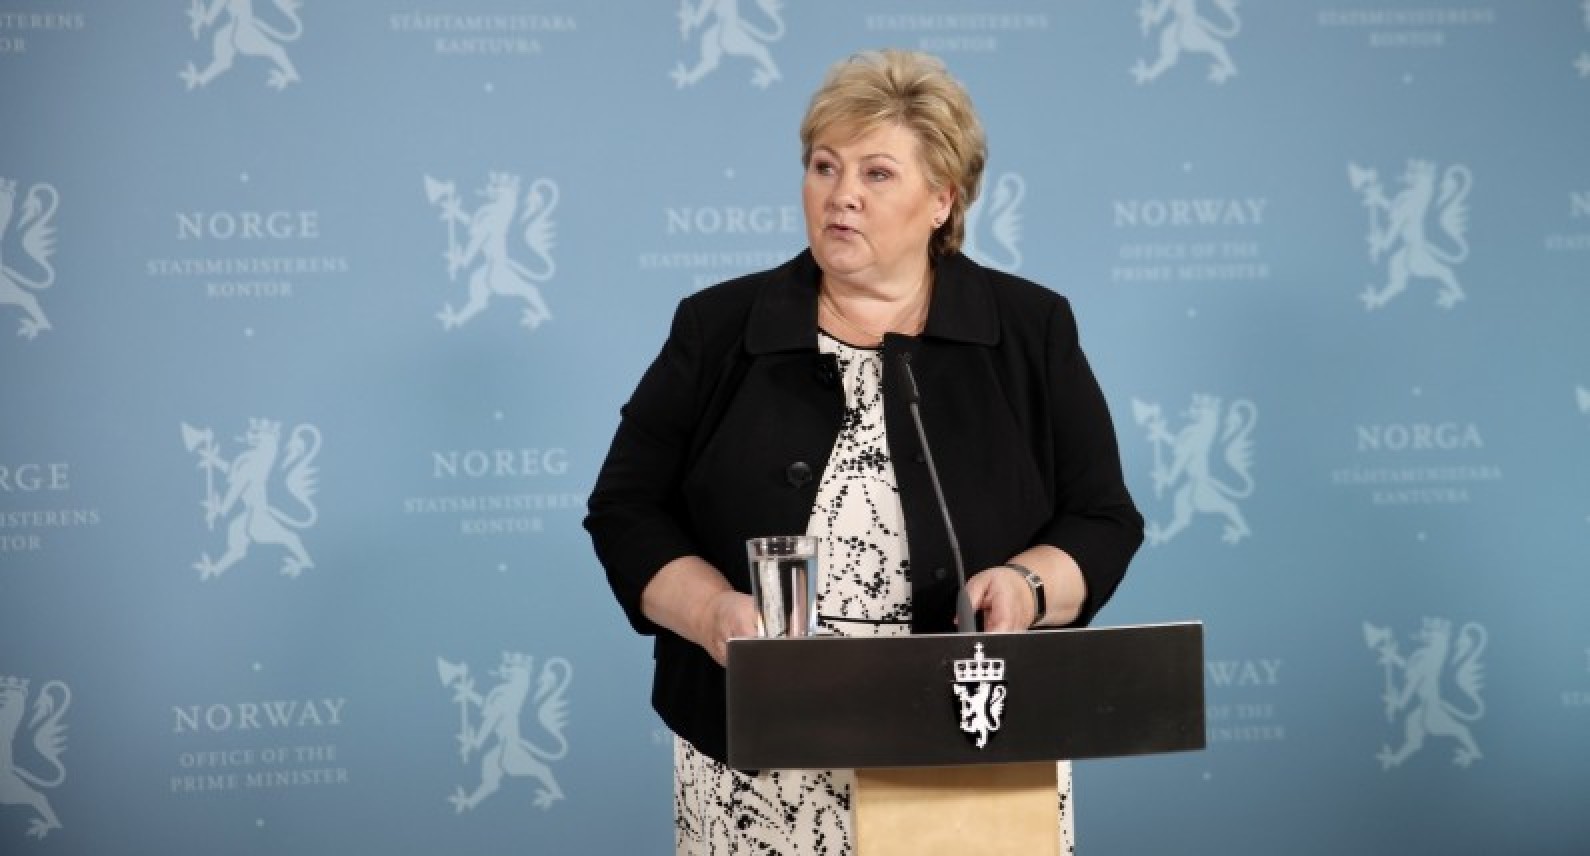 Sytuacja Polaków bez zmian: Norwegia otwiera się jedynie na państwa nordyckie